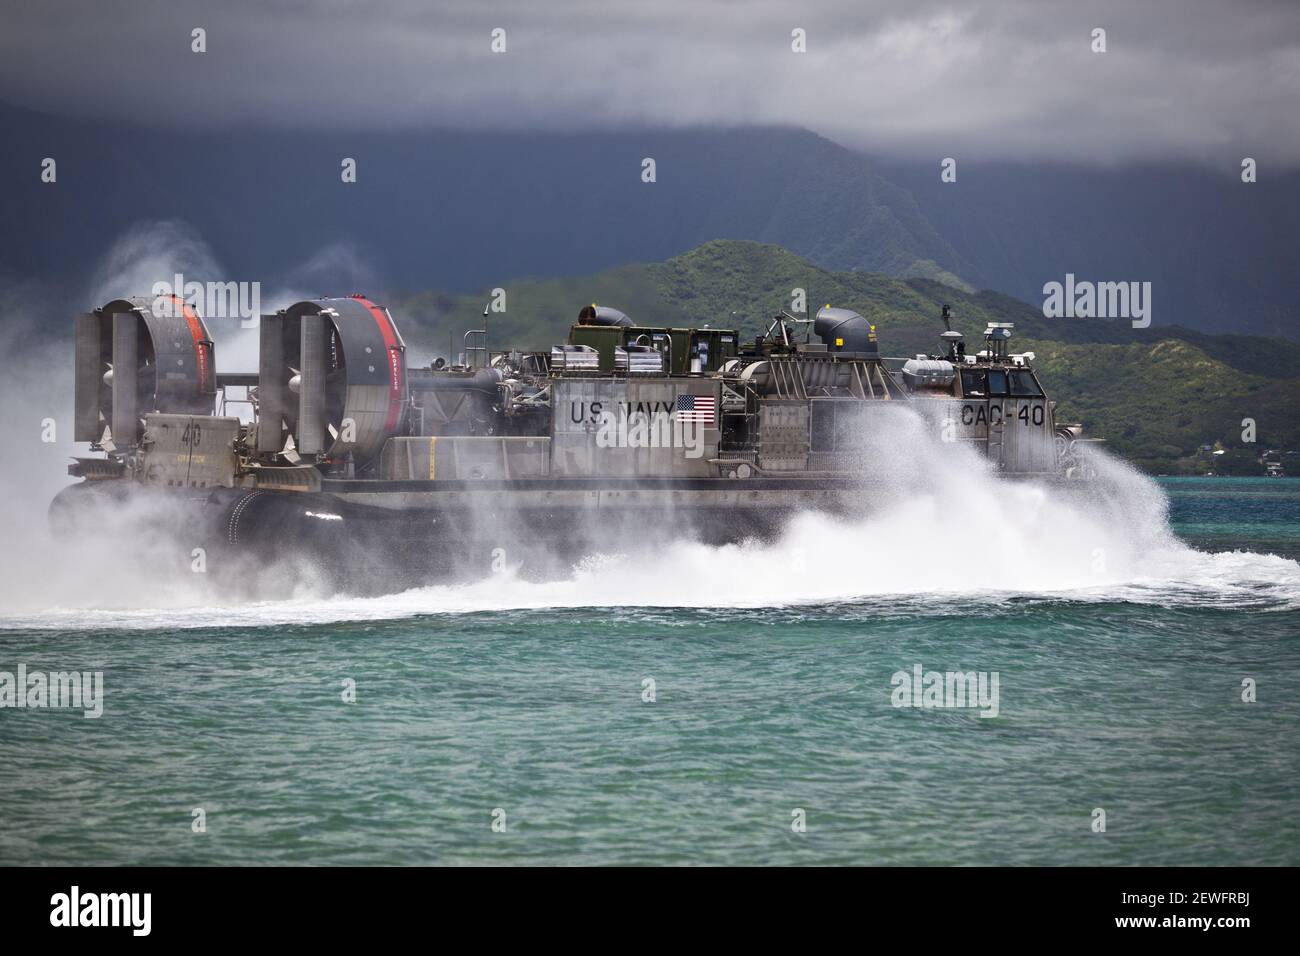 Un cojín aéreo de naves de aterrizaje de la Marina de los EE.UU. (LCAC) asignado a la unidad de naves de asalto 5 sale de la costa durante un ejercicio de carga en la zona de aterrizaje Westfield a bordo de la Estación Aérea del cuerpo de Infantería de Marina, Kaneohe Bay, Hawaii, 12th de julio de 2016. Los LCACs asignados a la Unidad de Artesanía de Asalto 5, Destacamento Foxtrot, están transportando equipo del cuerpo de Marina de los Estados Unidos a USS San Diego para que pueda ser enviado al Área de Entrenamiento de Pohakuloa, Hawai, en apoyo del ejercicio de Rim of the Pacific. (EE.UU Marine Corps Foto por Cpl. Aaron S. Patterson) por favor tenga en cuenta: Las tarifas cobradas por la agencia son solo por los servicios de la agencia, y no lo son, ni lo son Foto de stock